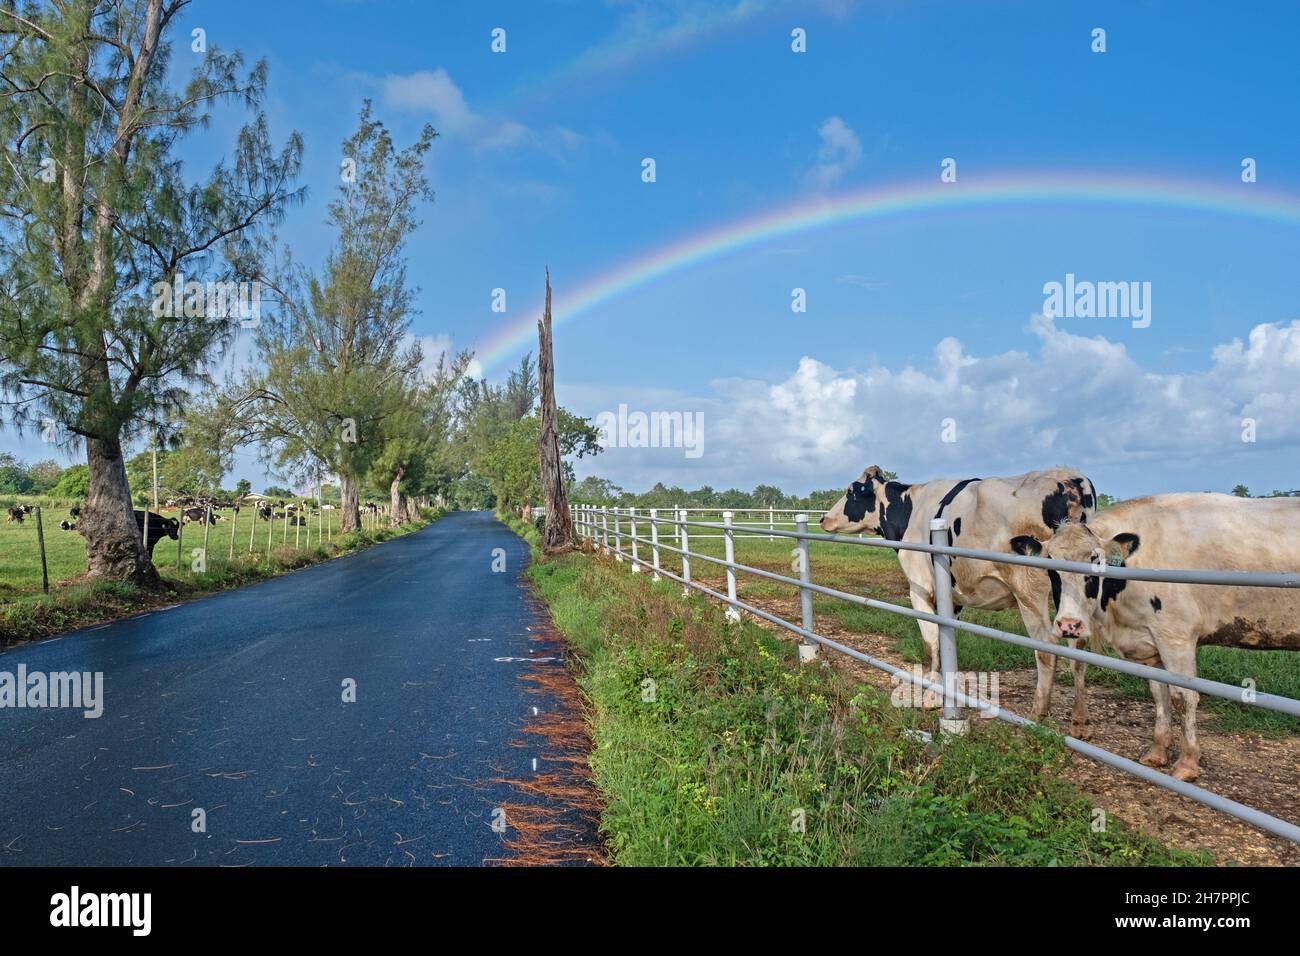 Arco iris y vacas lecheras en campo a lo largo de la carretera del país en la parte central de Puerto Rico, Antillas Mayores, Caribe Foto de stock